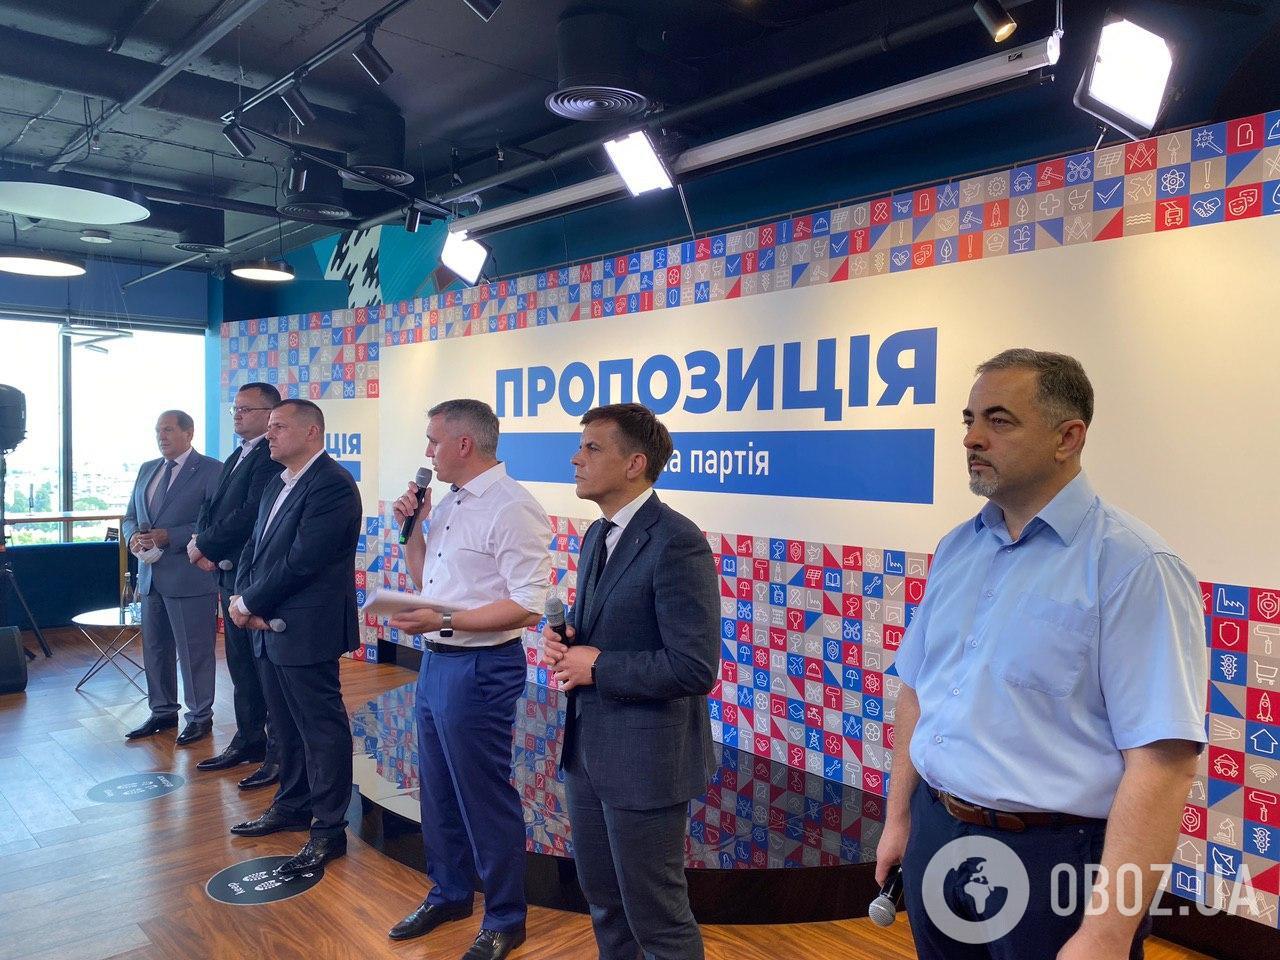 В Украине представили партию мэров "Пропозиція"